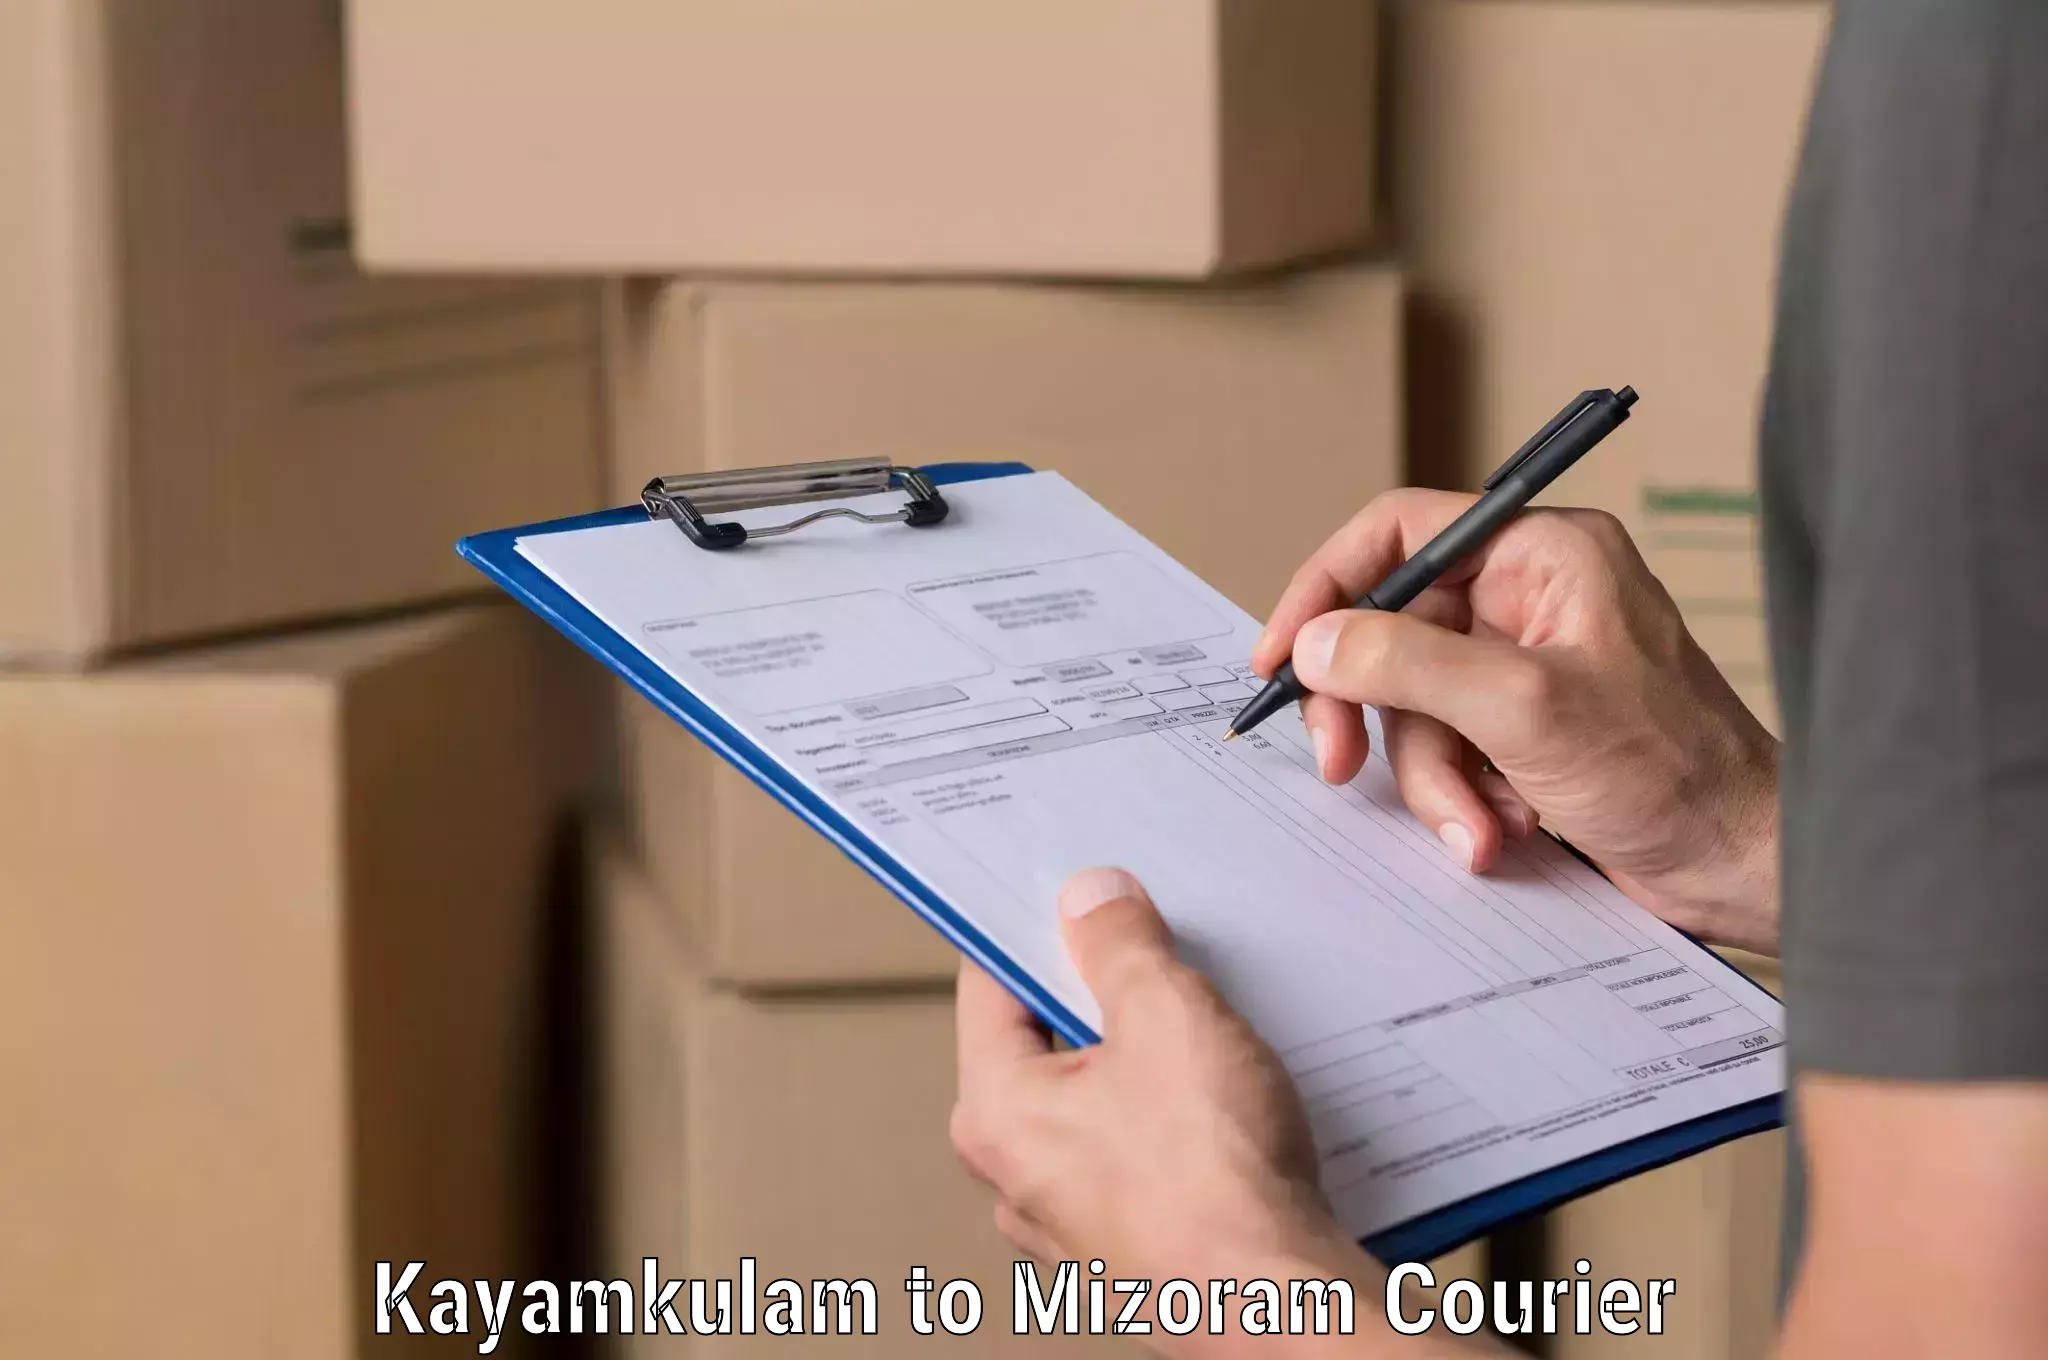 Smart logistics solutions Kayamkulam to Saitual